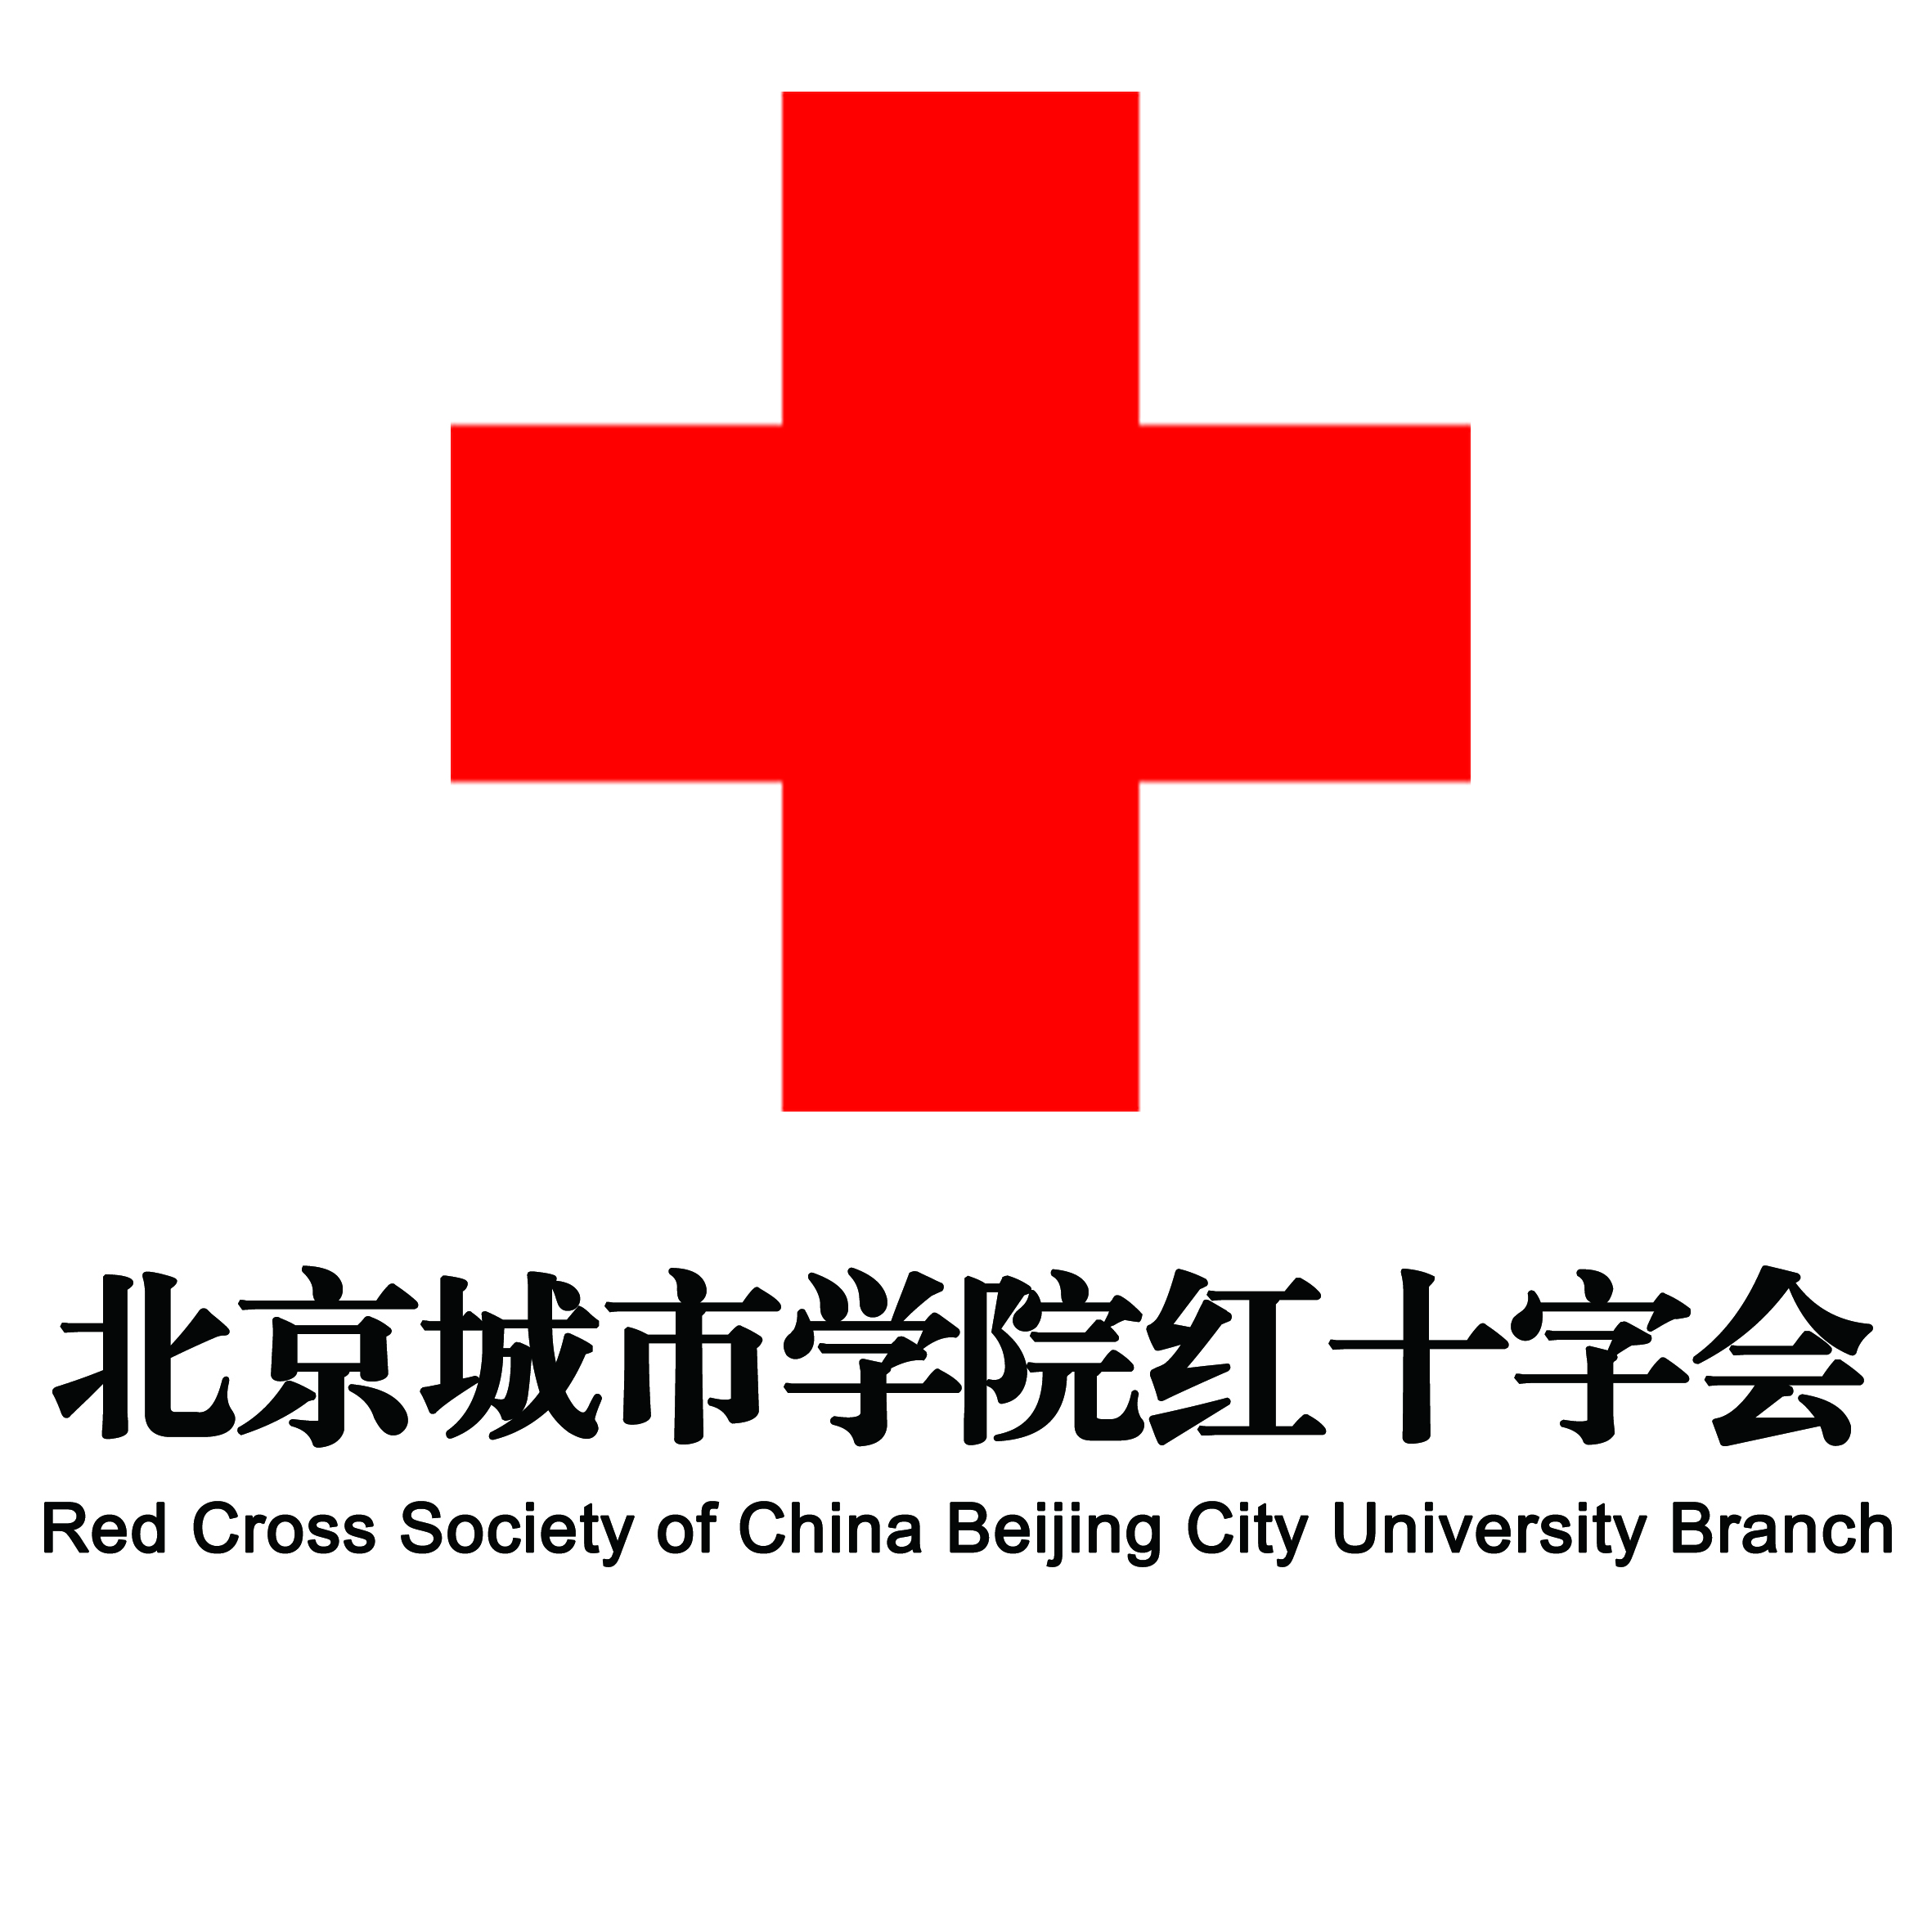 北京城市學院紅十字會學生分會